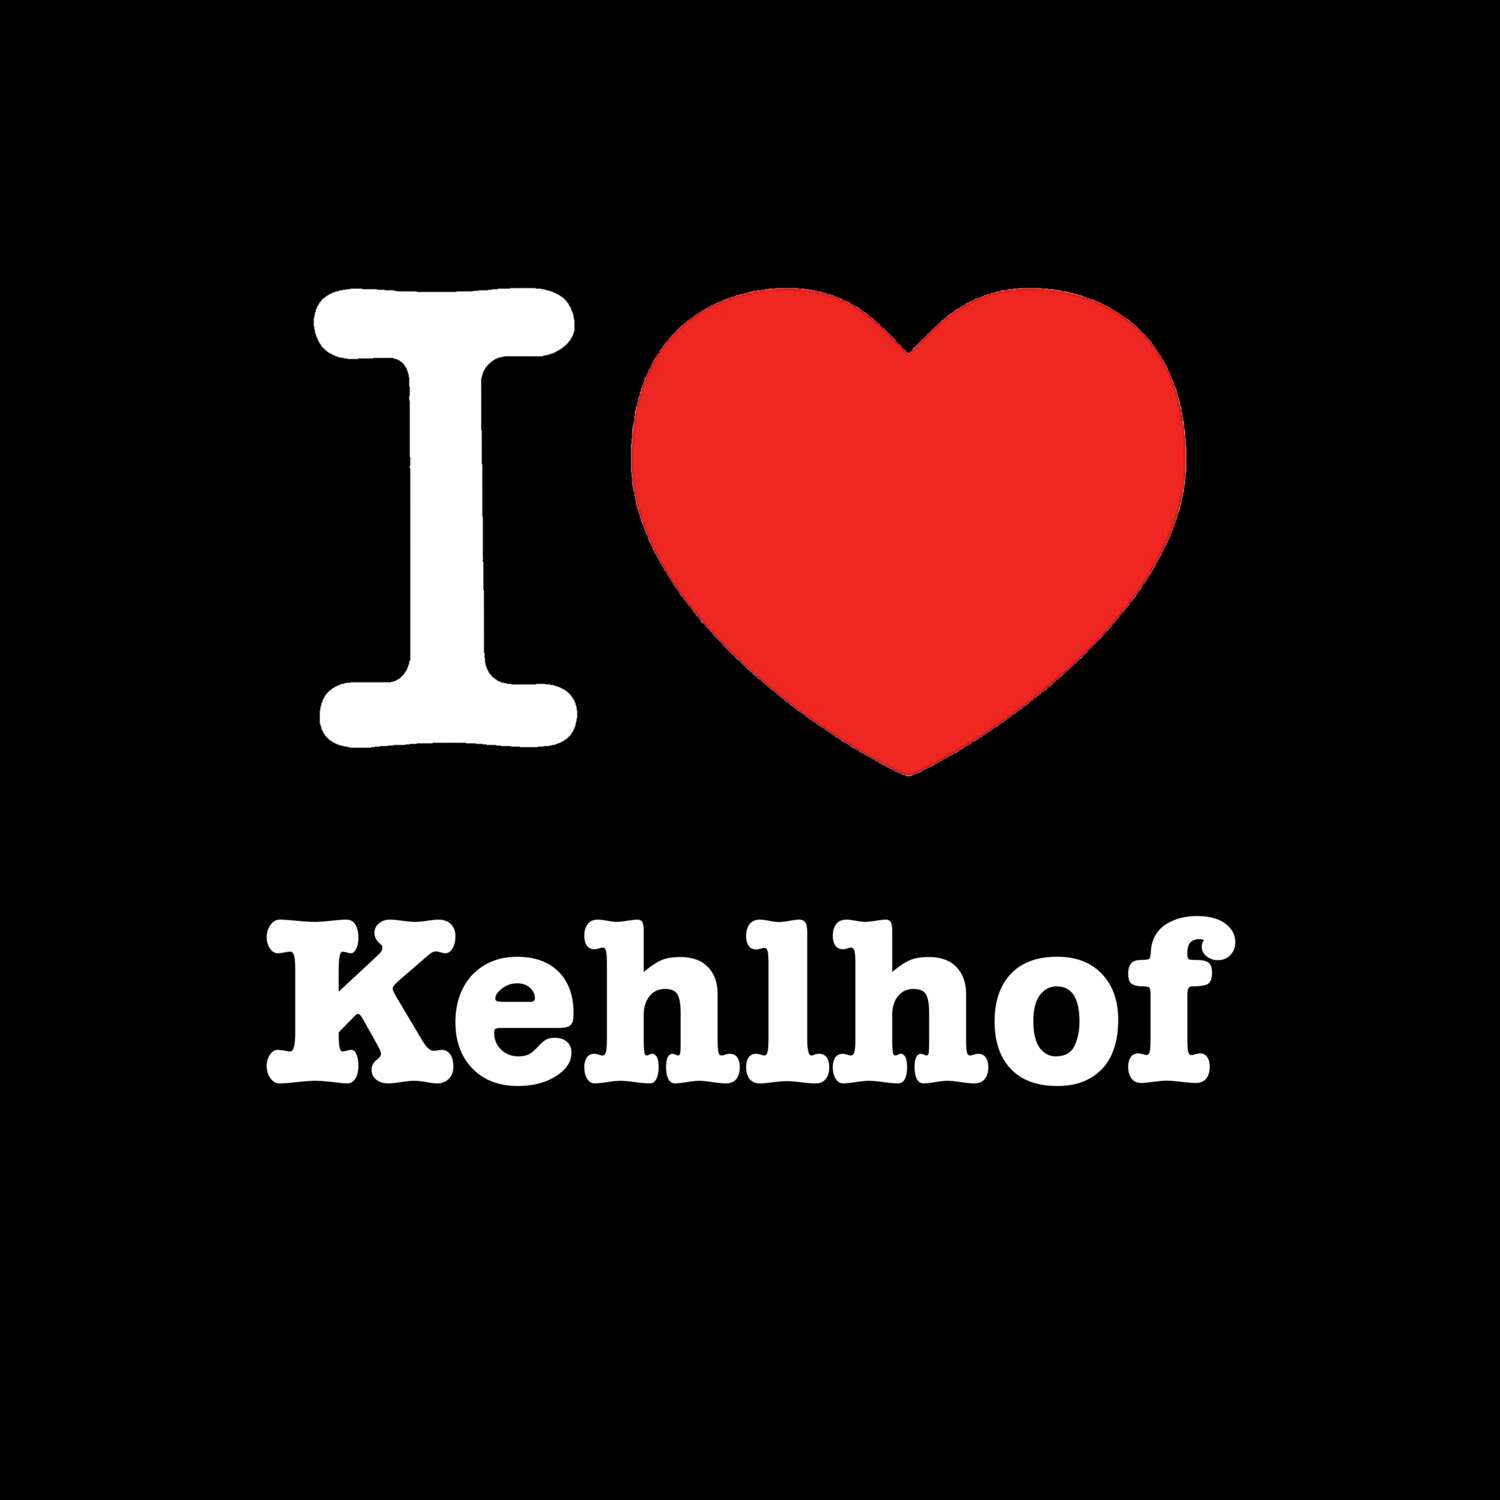 Kehlhof T-Shirt »I love«